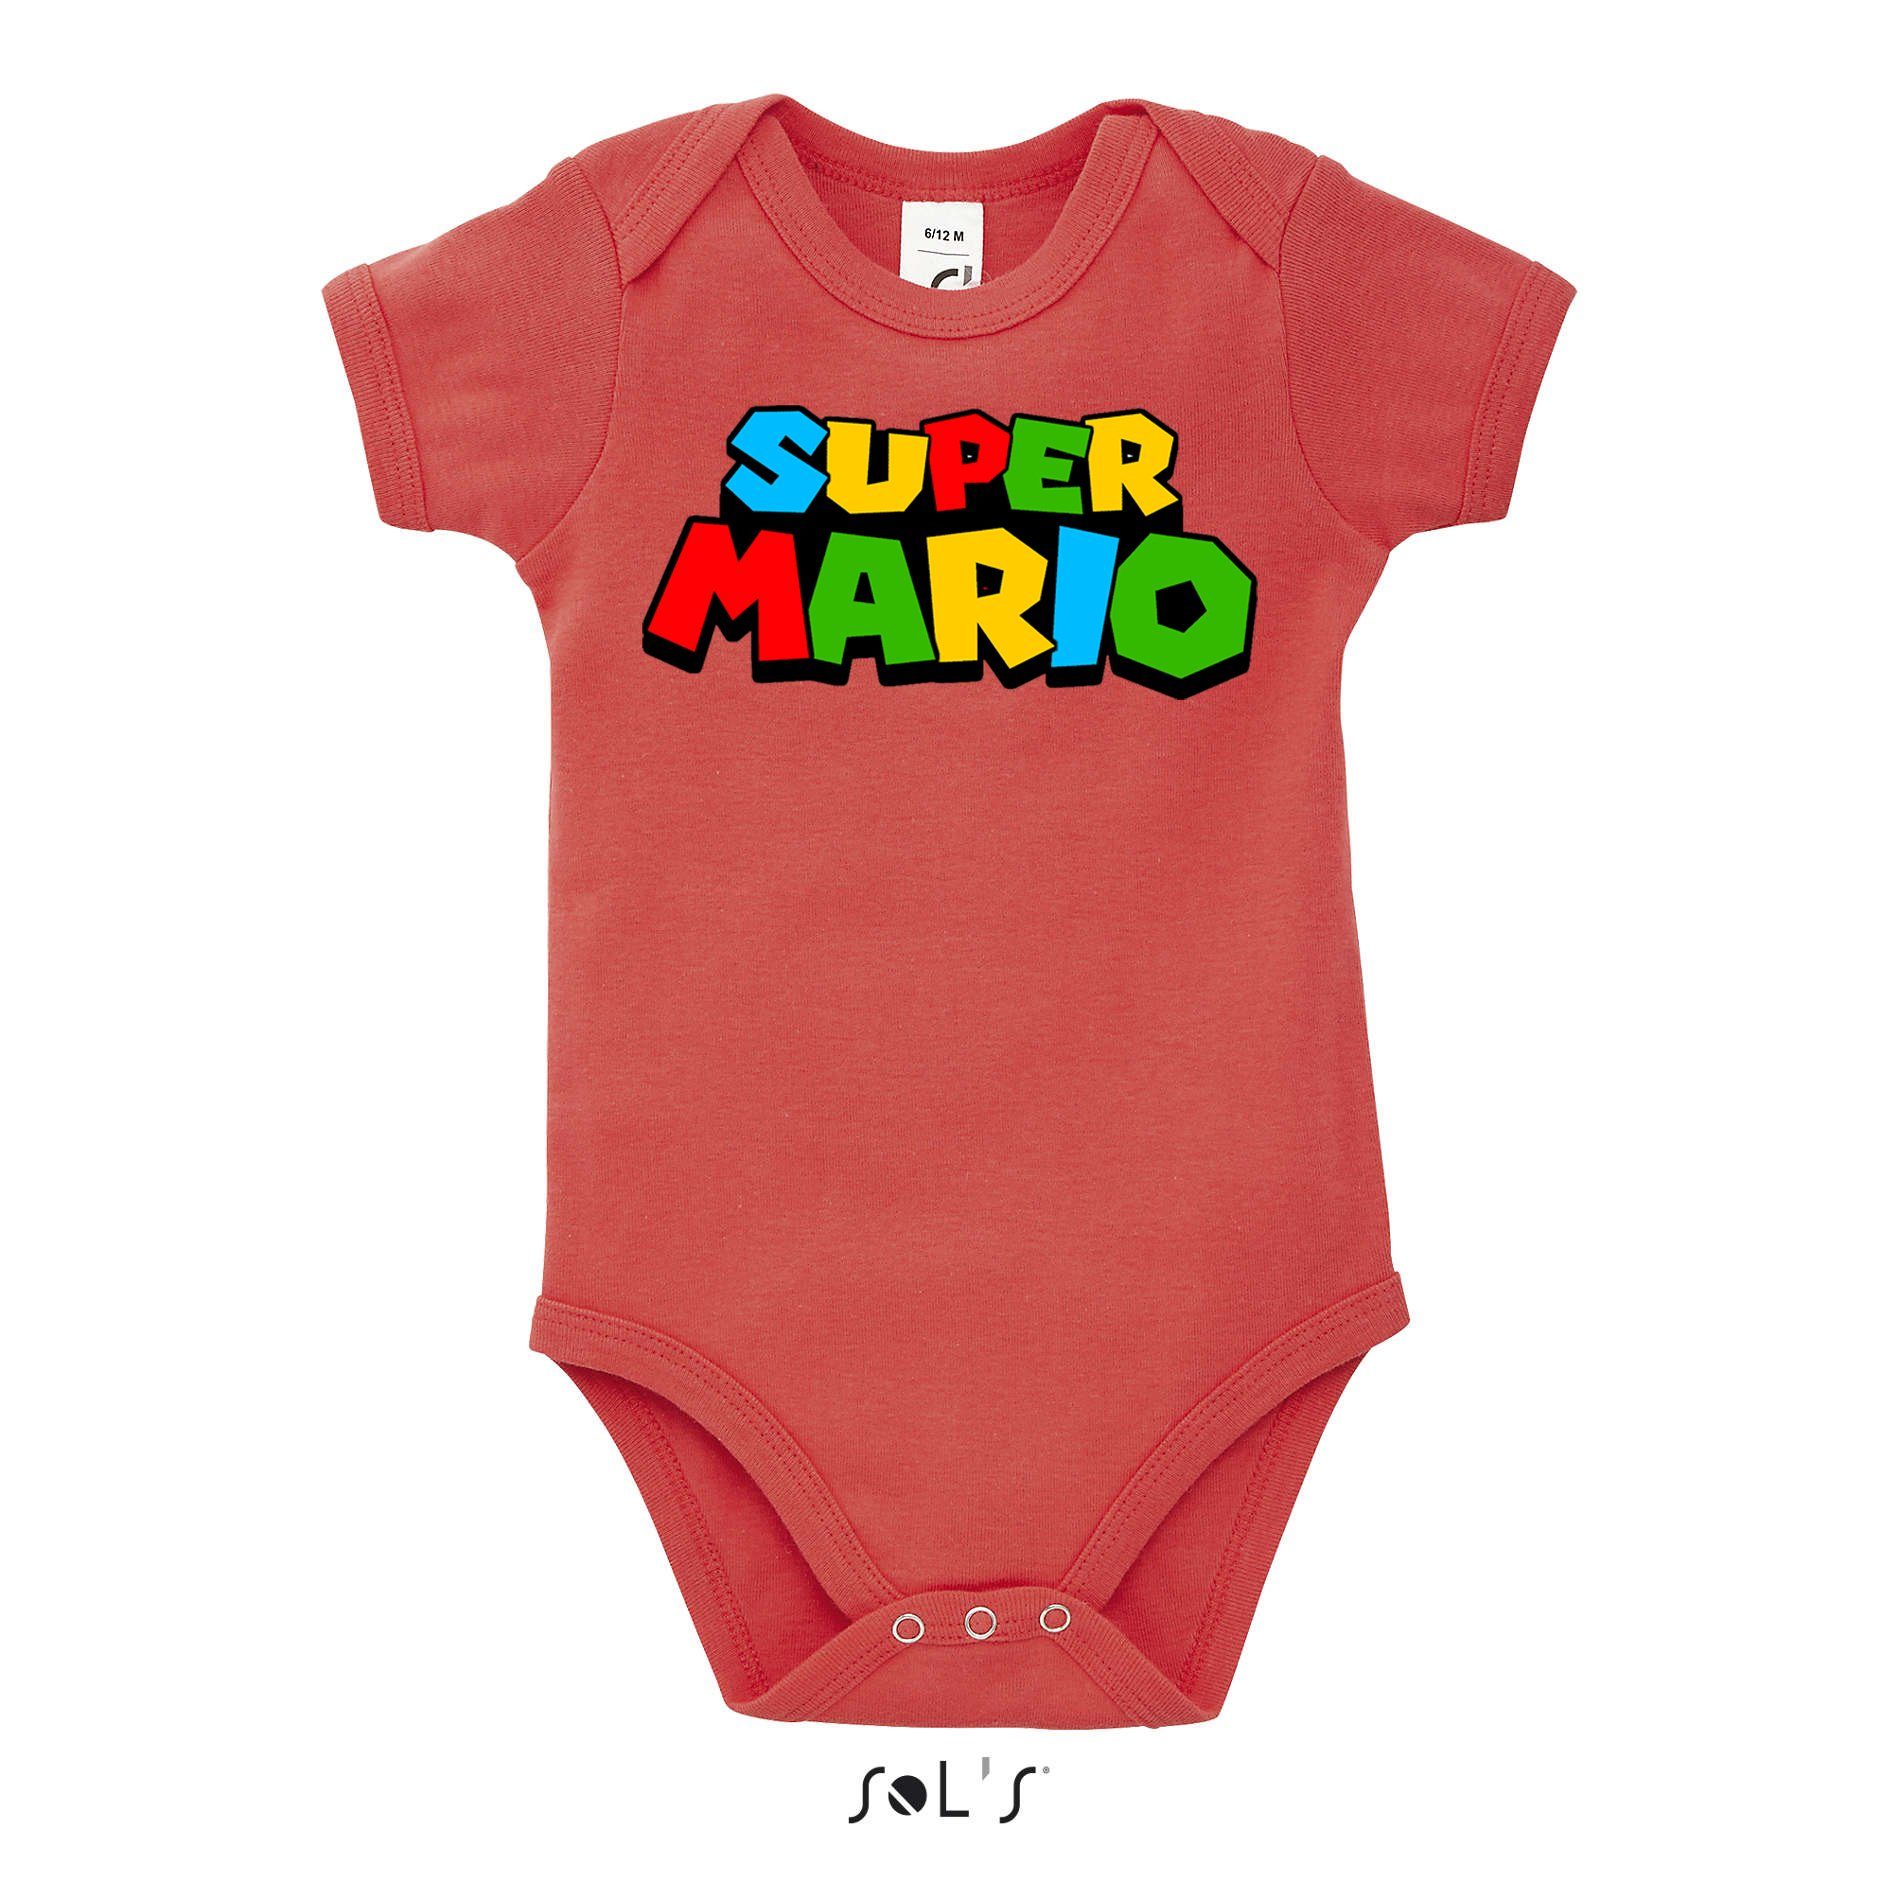 Blondie & Brownie Strampler Kinder Baby Super Mario Nintendo Gamer Gaming Konsole Spiele Rot